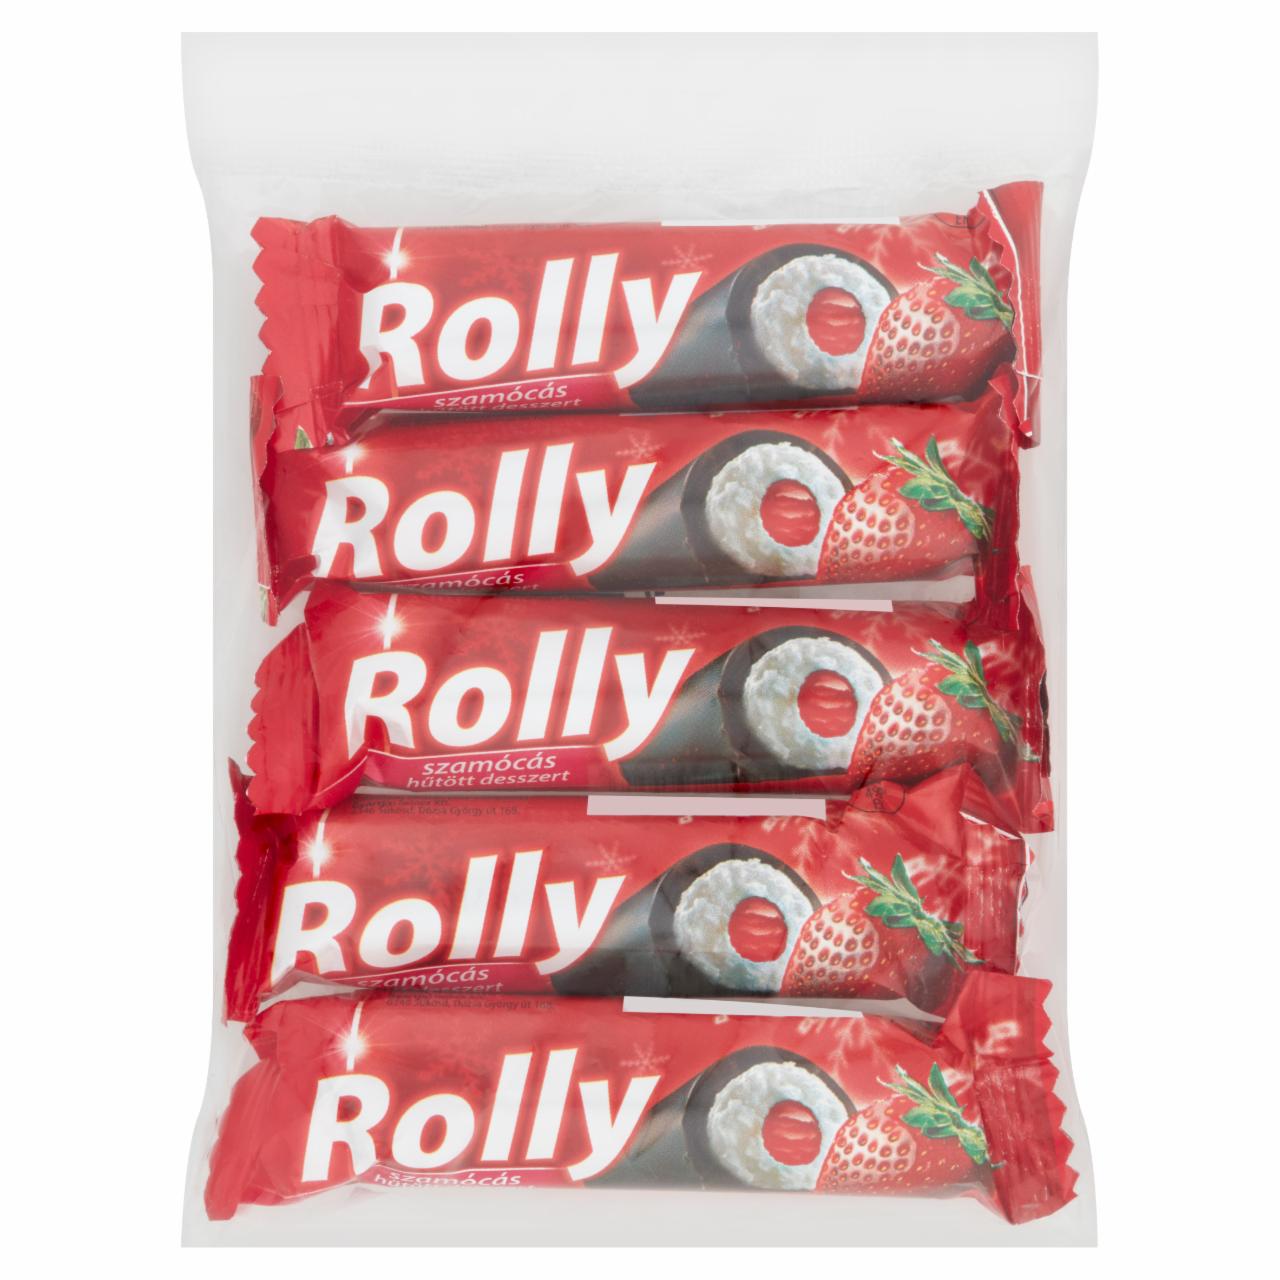 Képek - Rolly szamócás hűtött desszert 5 x 30 g